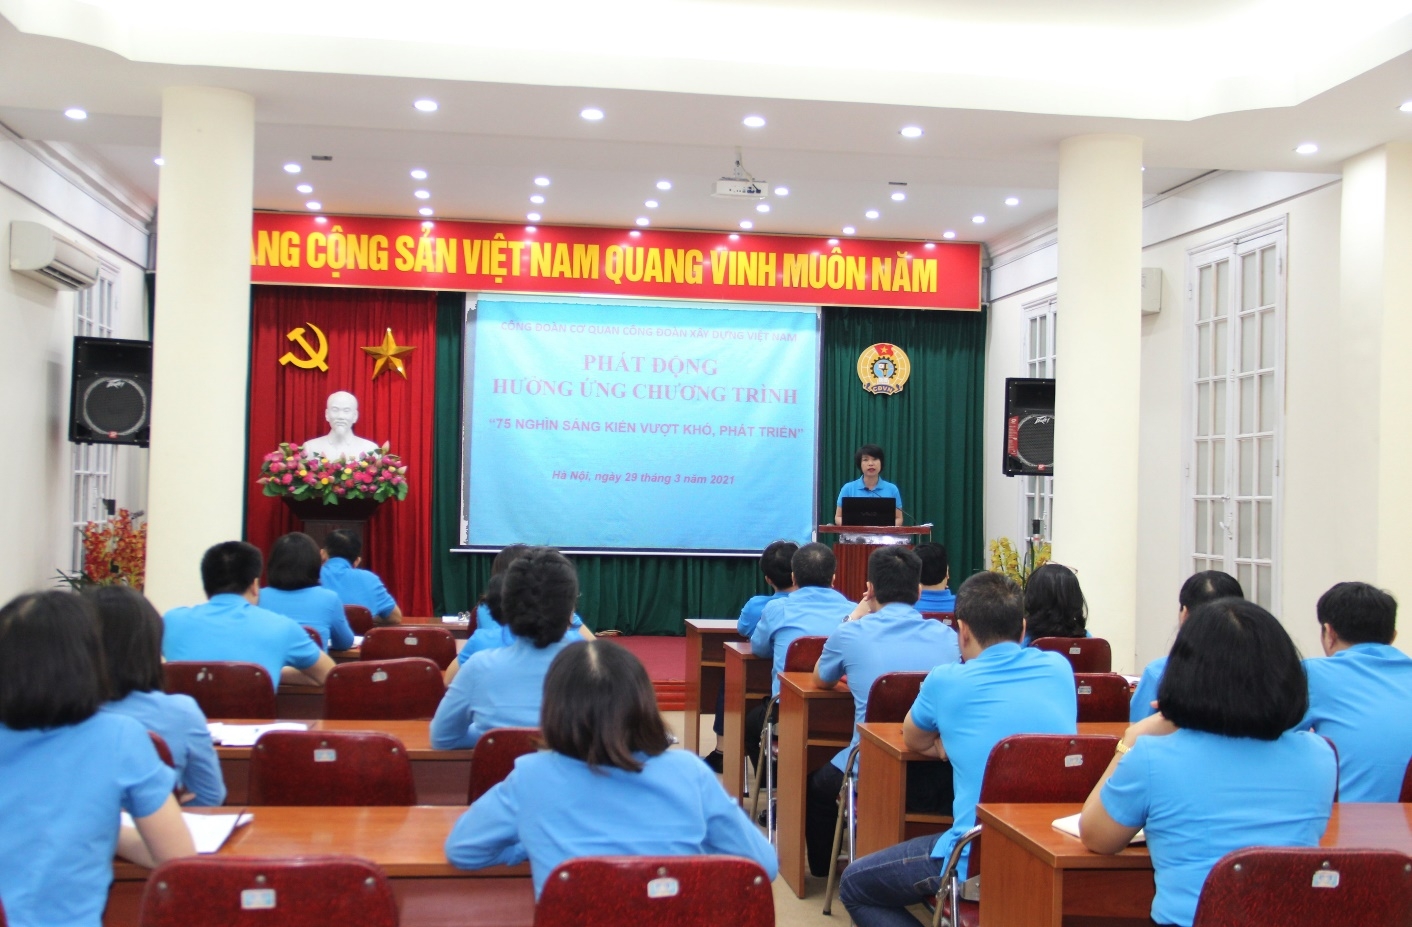 Công đoàn Xây dựng Việt Nam: Phát động hưởng ứng chương trình “75 nghìn sáng kiến, vượt khó, phát triển”